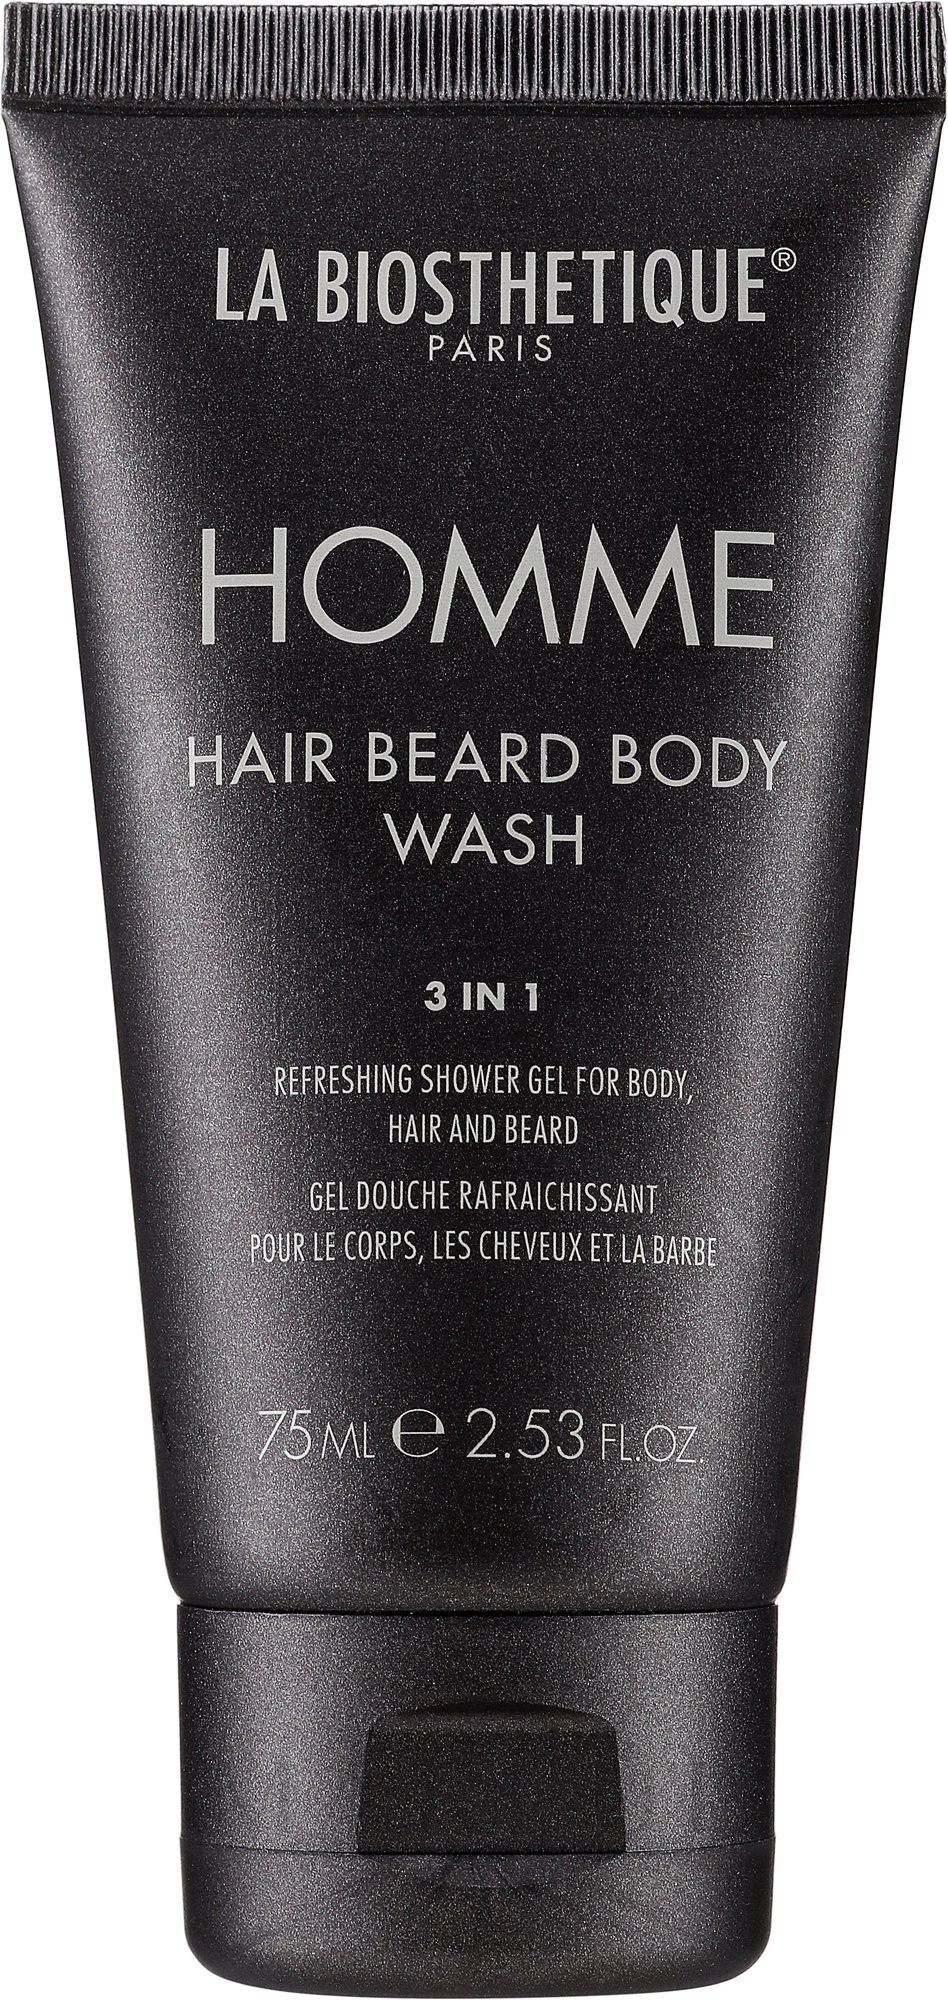 Erfrischendes Duschgel für Körper, Haar und Bart - La Biosthetique Homme Hair Beard Body Wash — Bild 75 ml